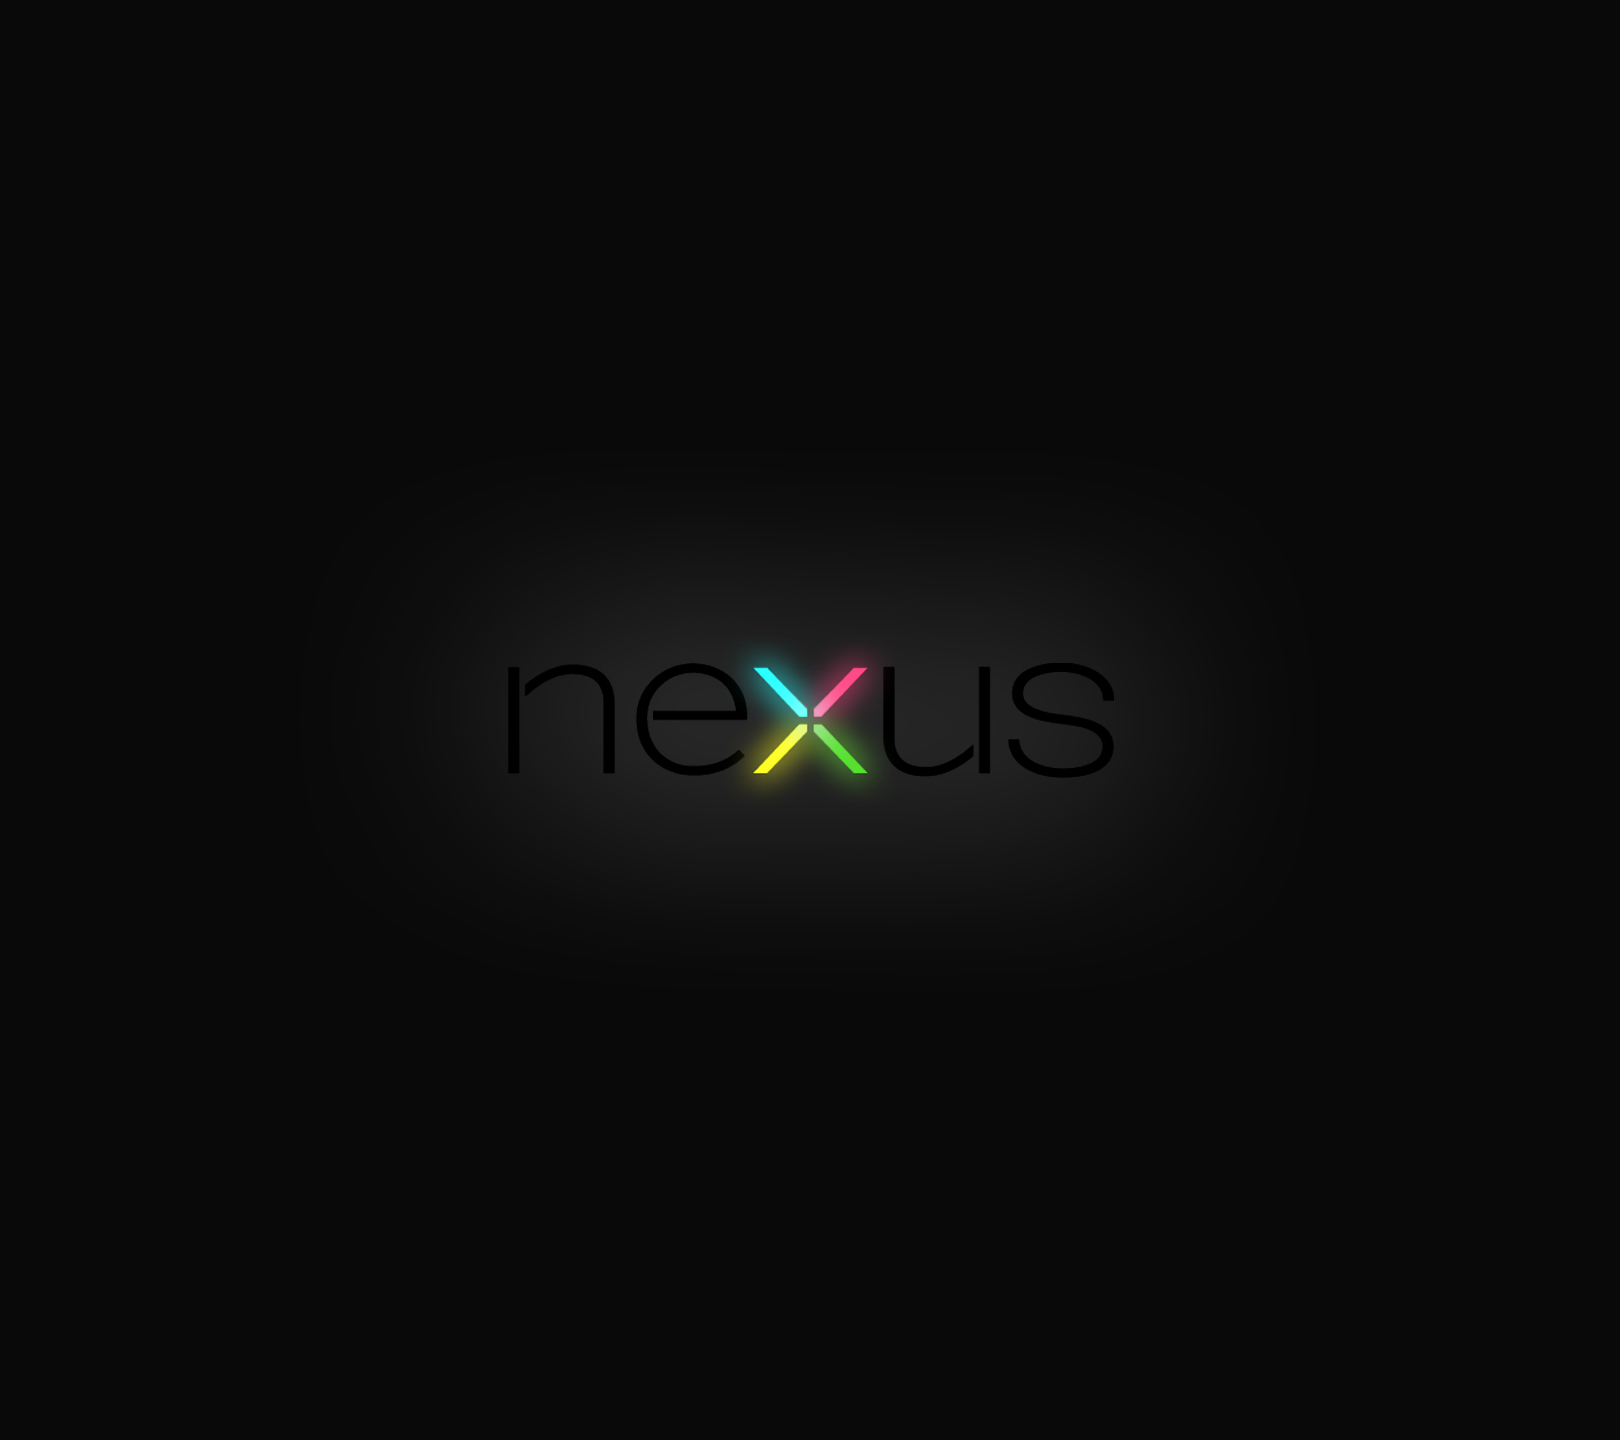 Description Nexus Wallpaper Is A Hi Res For Pc Desktops